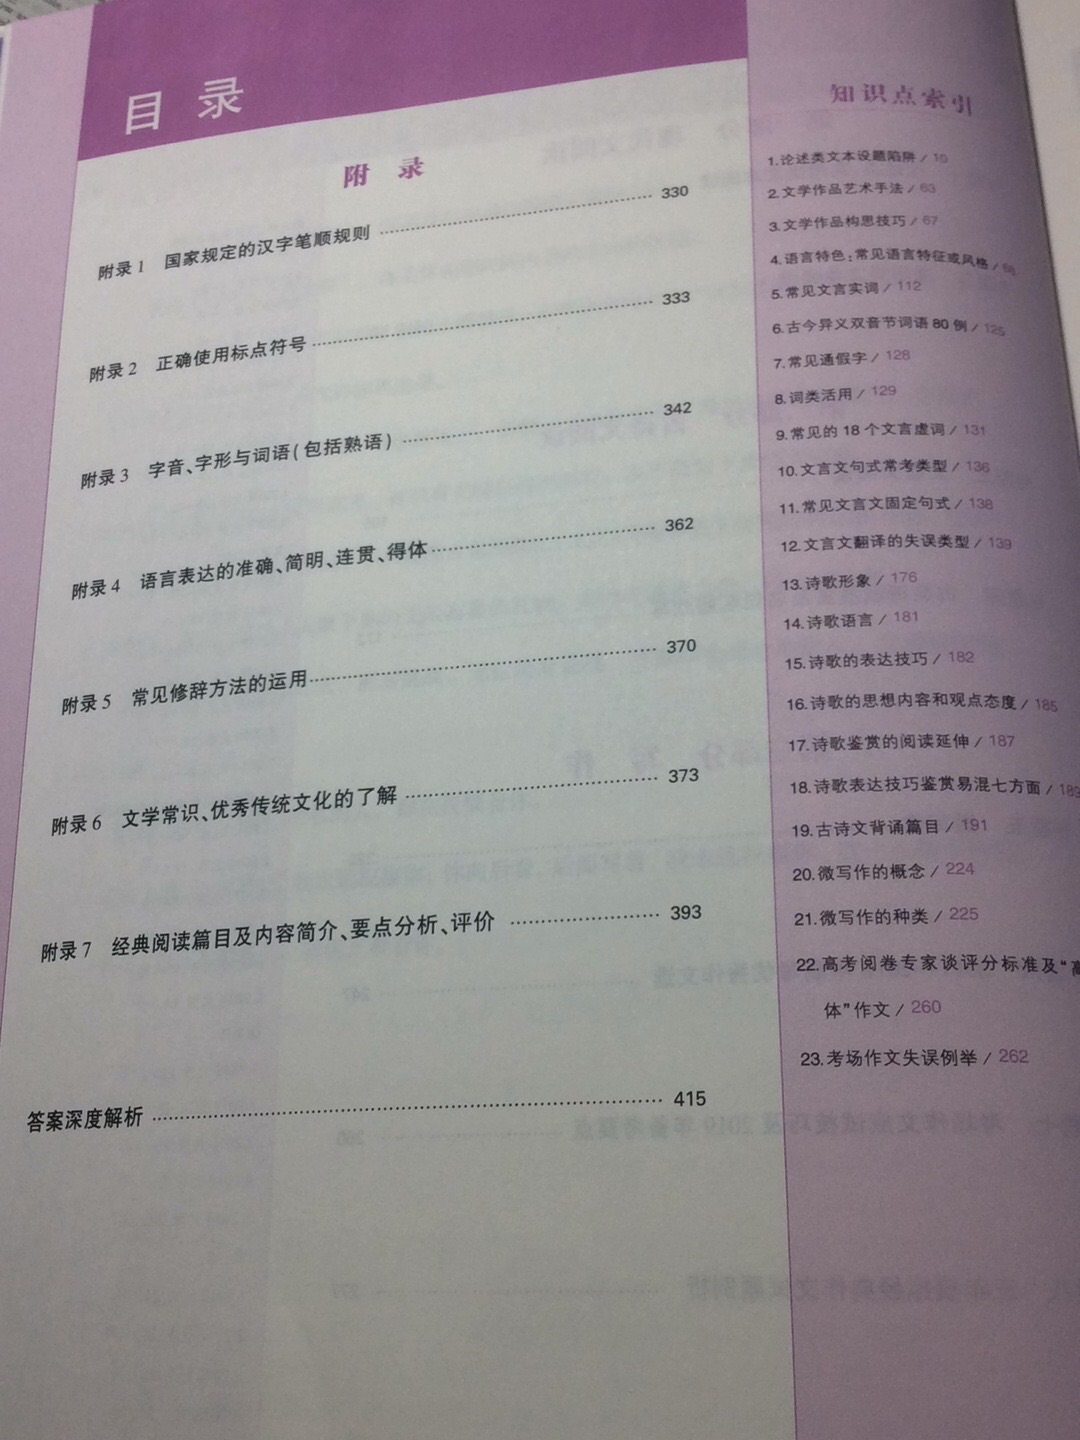 主要还是阅读和写作，里面题很多，答案也很详细。后面有基础知识，是一本适用于北京高考很不错的书。